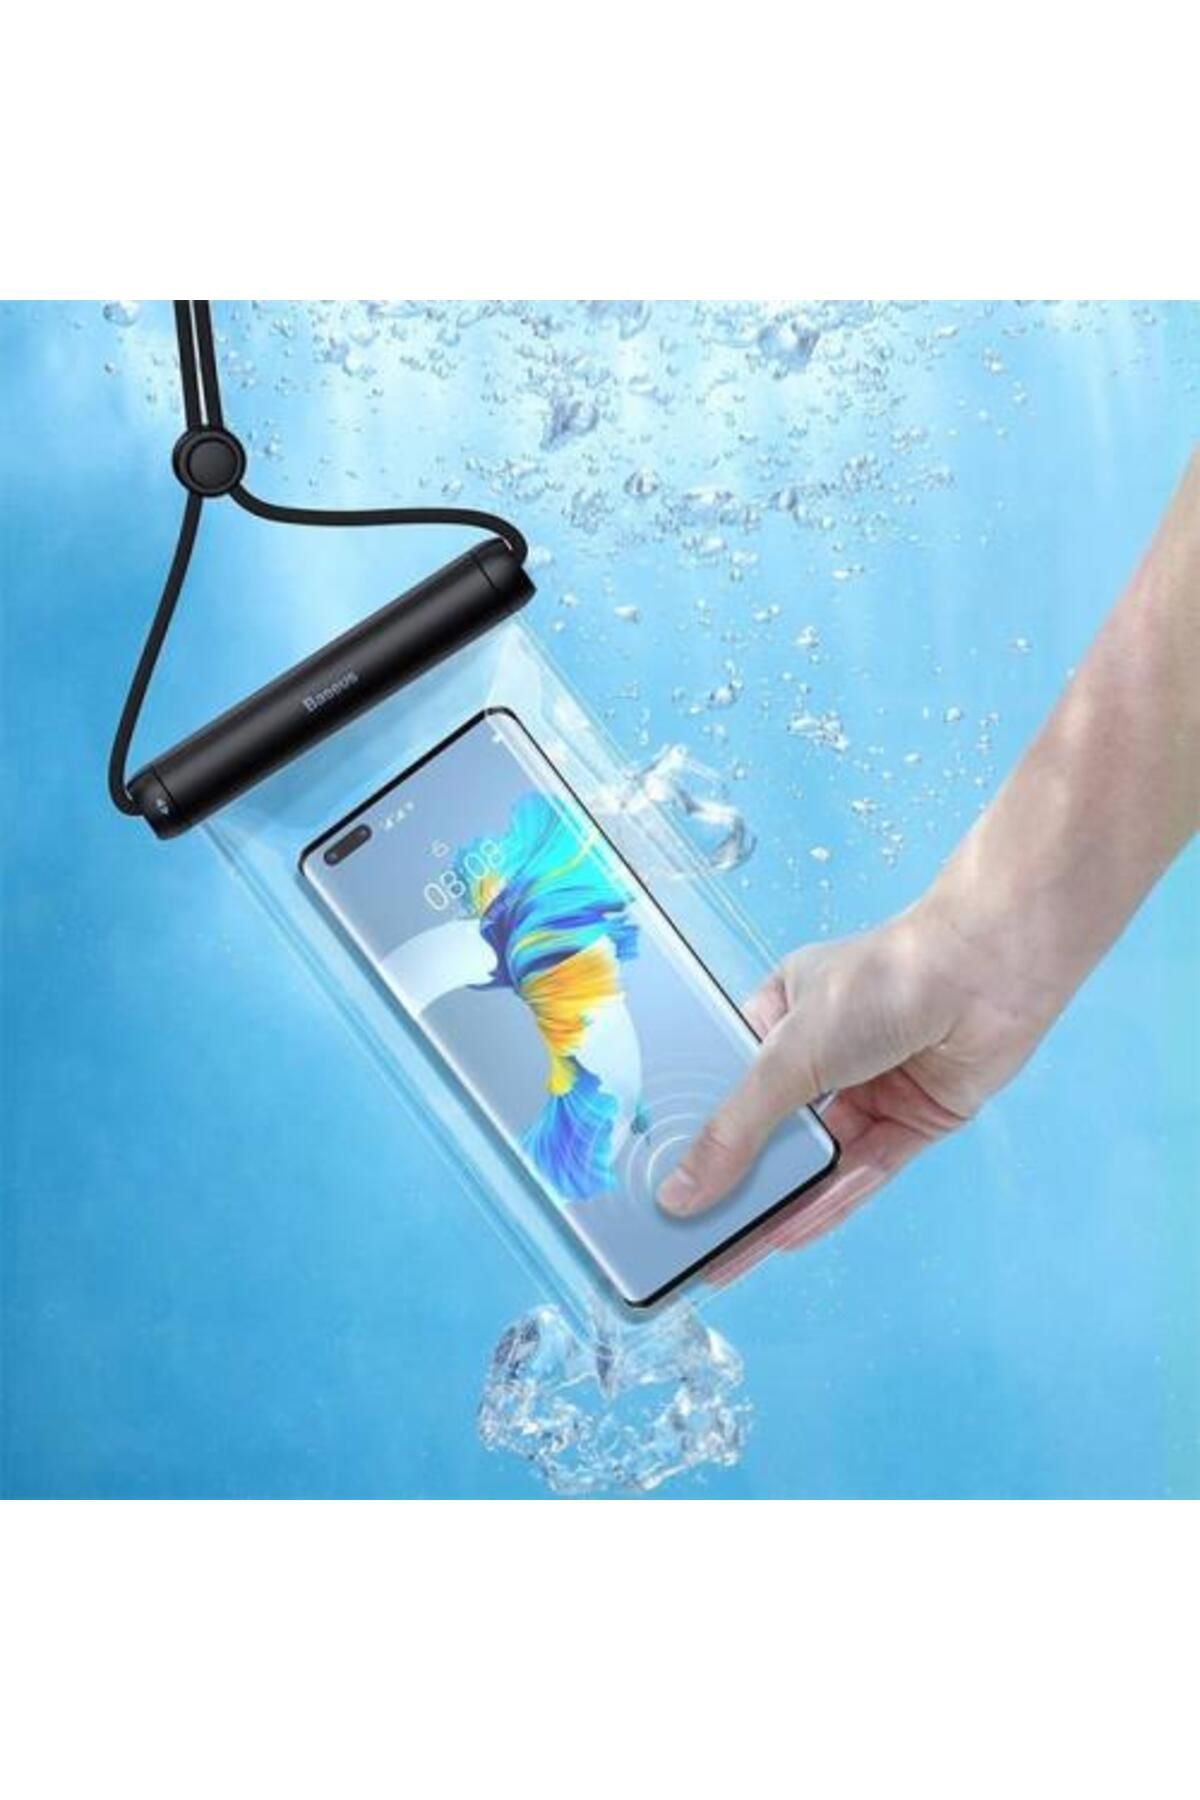 Baseus Ipx8 Su Geçirmez Su Altı Dokunmatik Telefon Kılıfı, Boyun Askılı, Deniz, Havuz Için Kılıf